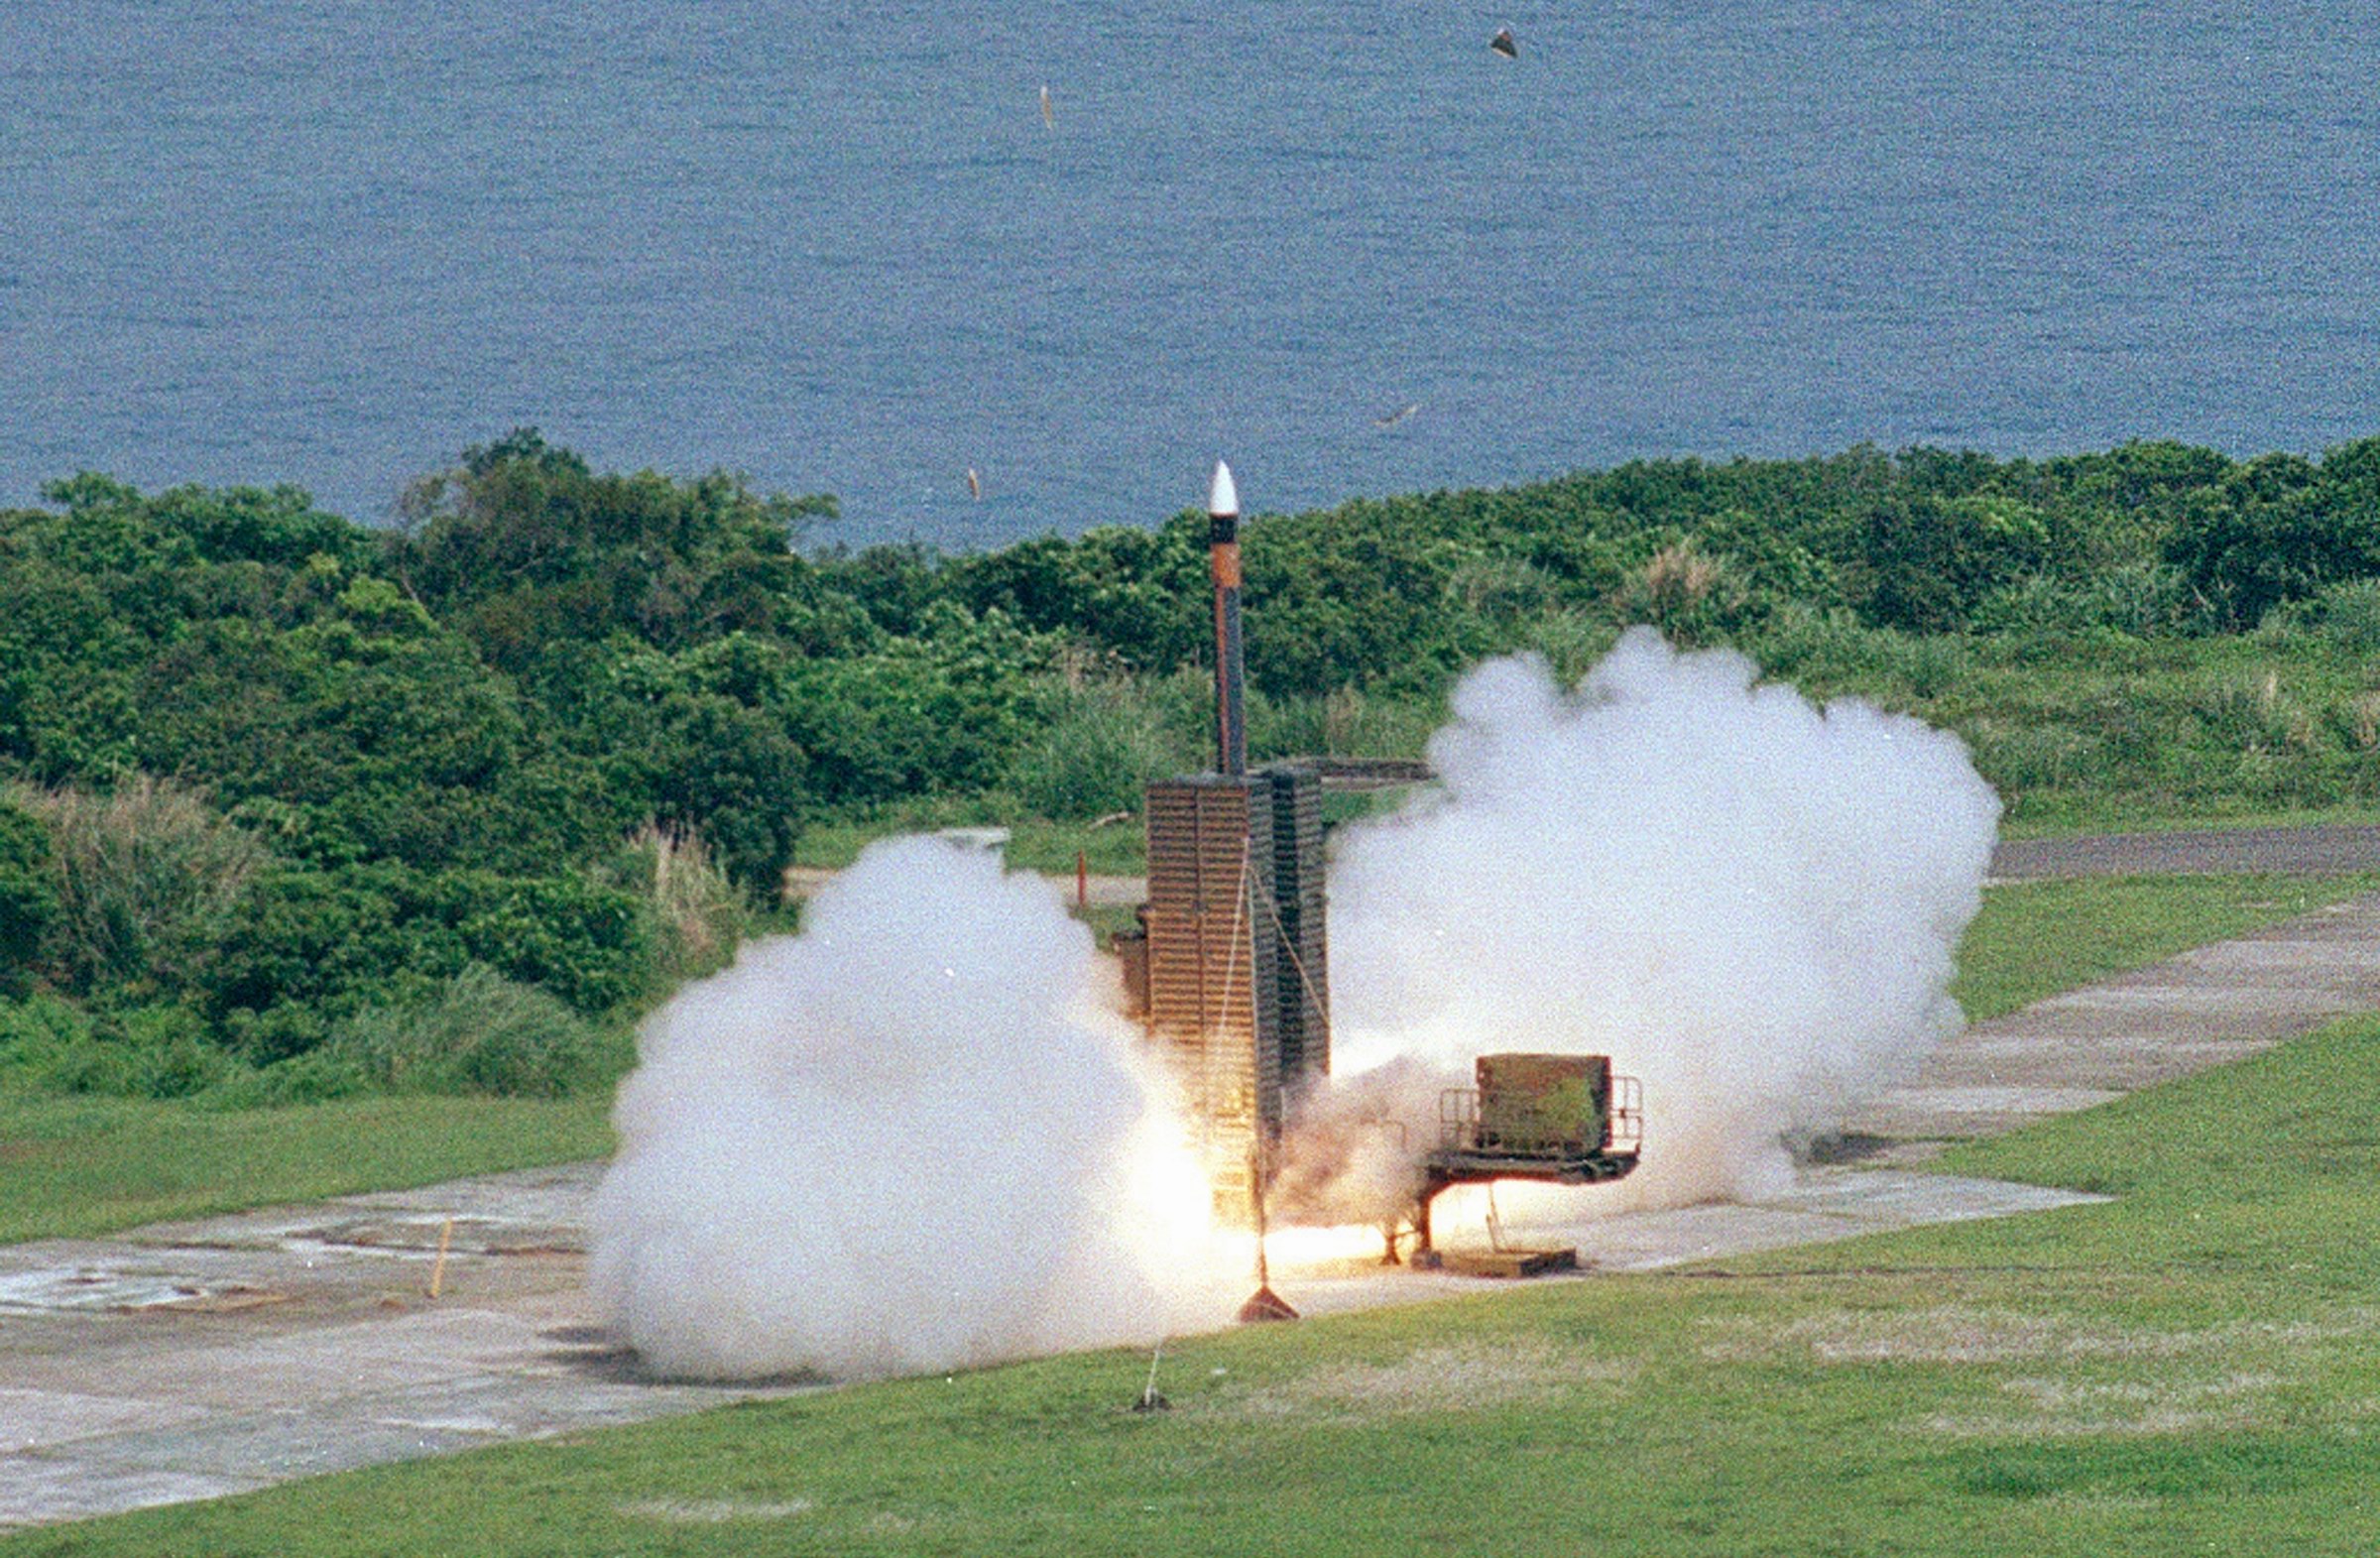 天弓三型导弹 图自台湾中科院官网